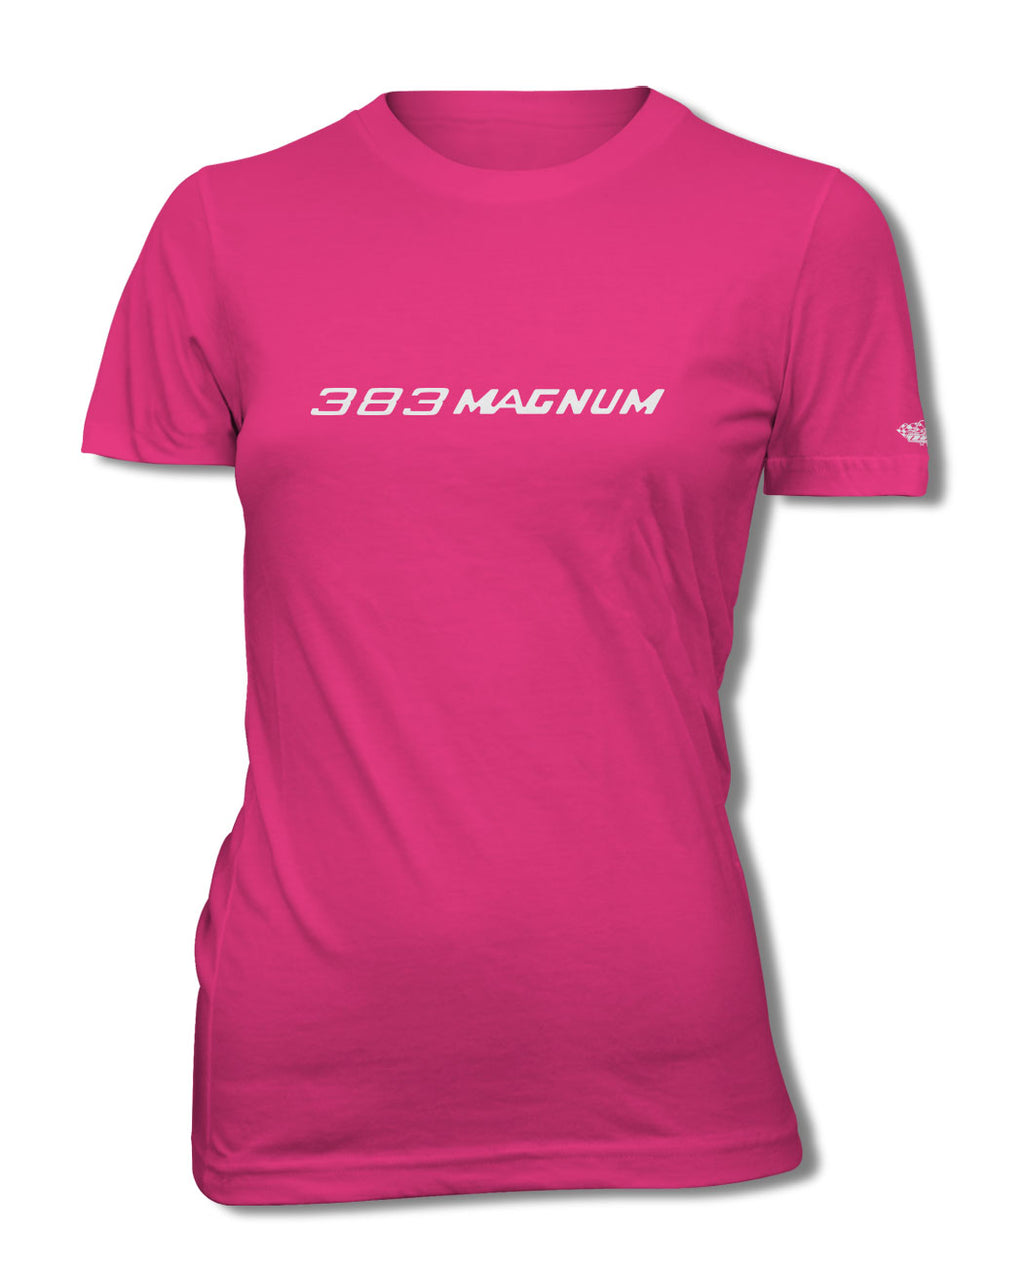 Dodge 383 Magnum Emblem T-Shirt - Women - Emblem